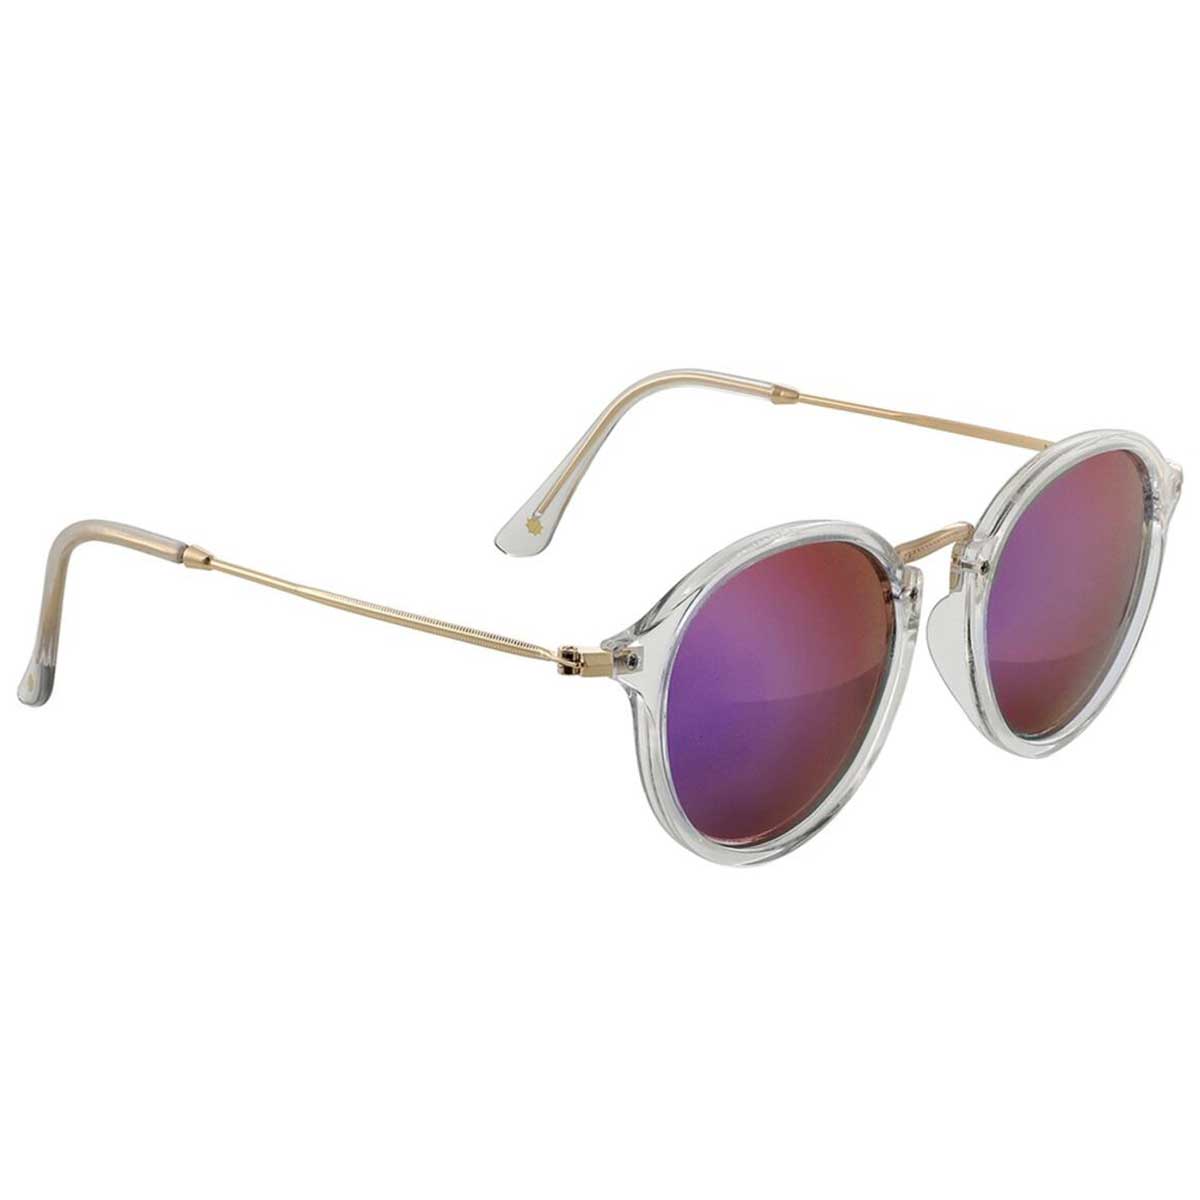 Klein Polarized Sunglasses Clear/Pnk Mirror OS